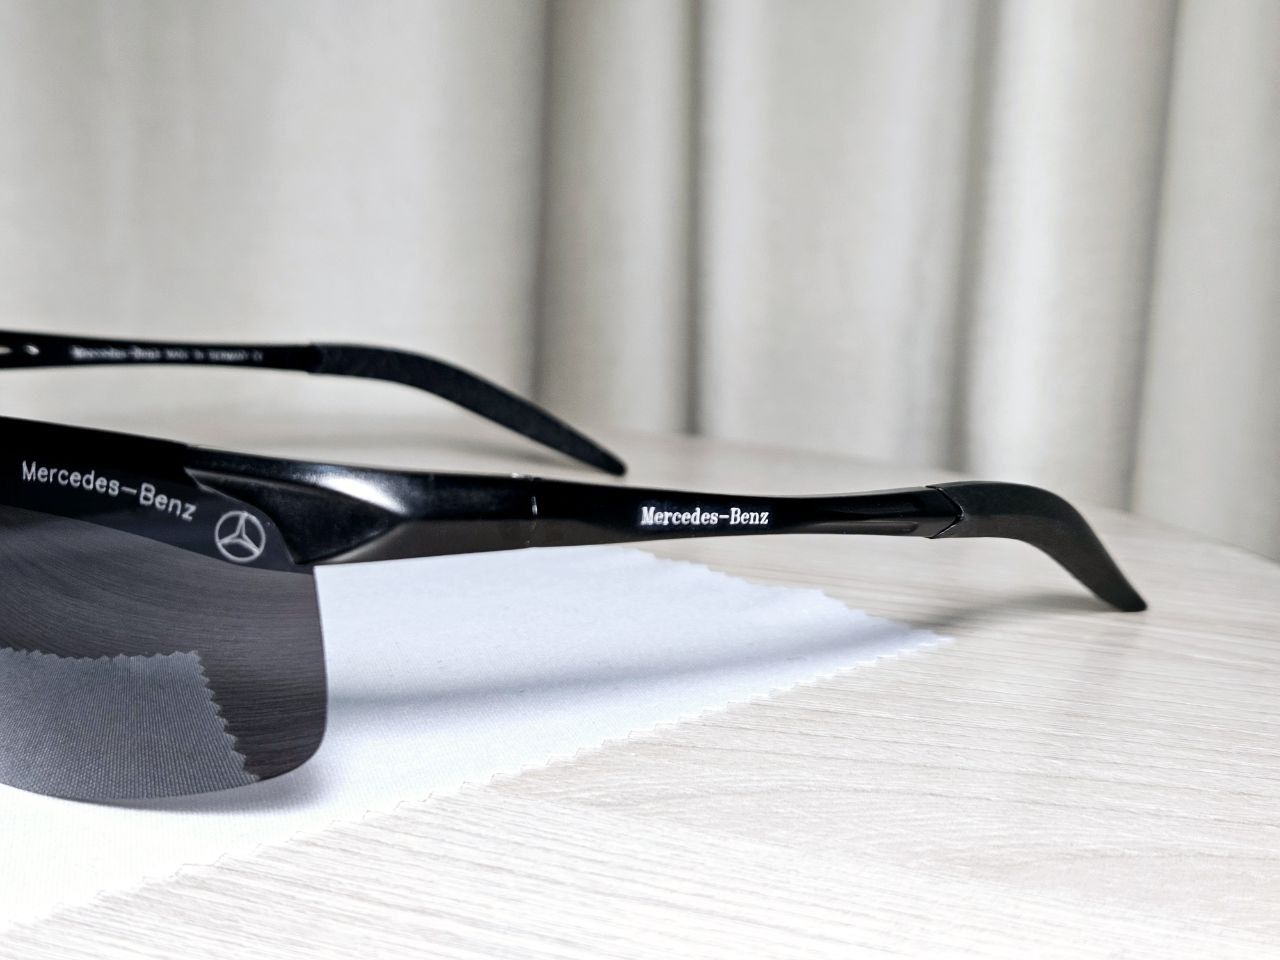 Солнцезащитные очки поляризационные подарочный набор